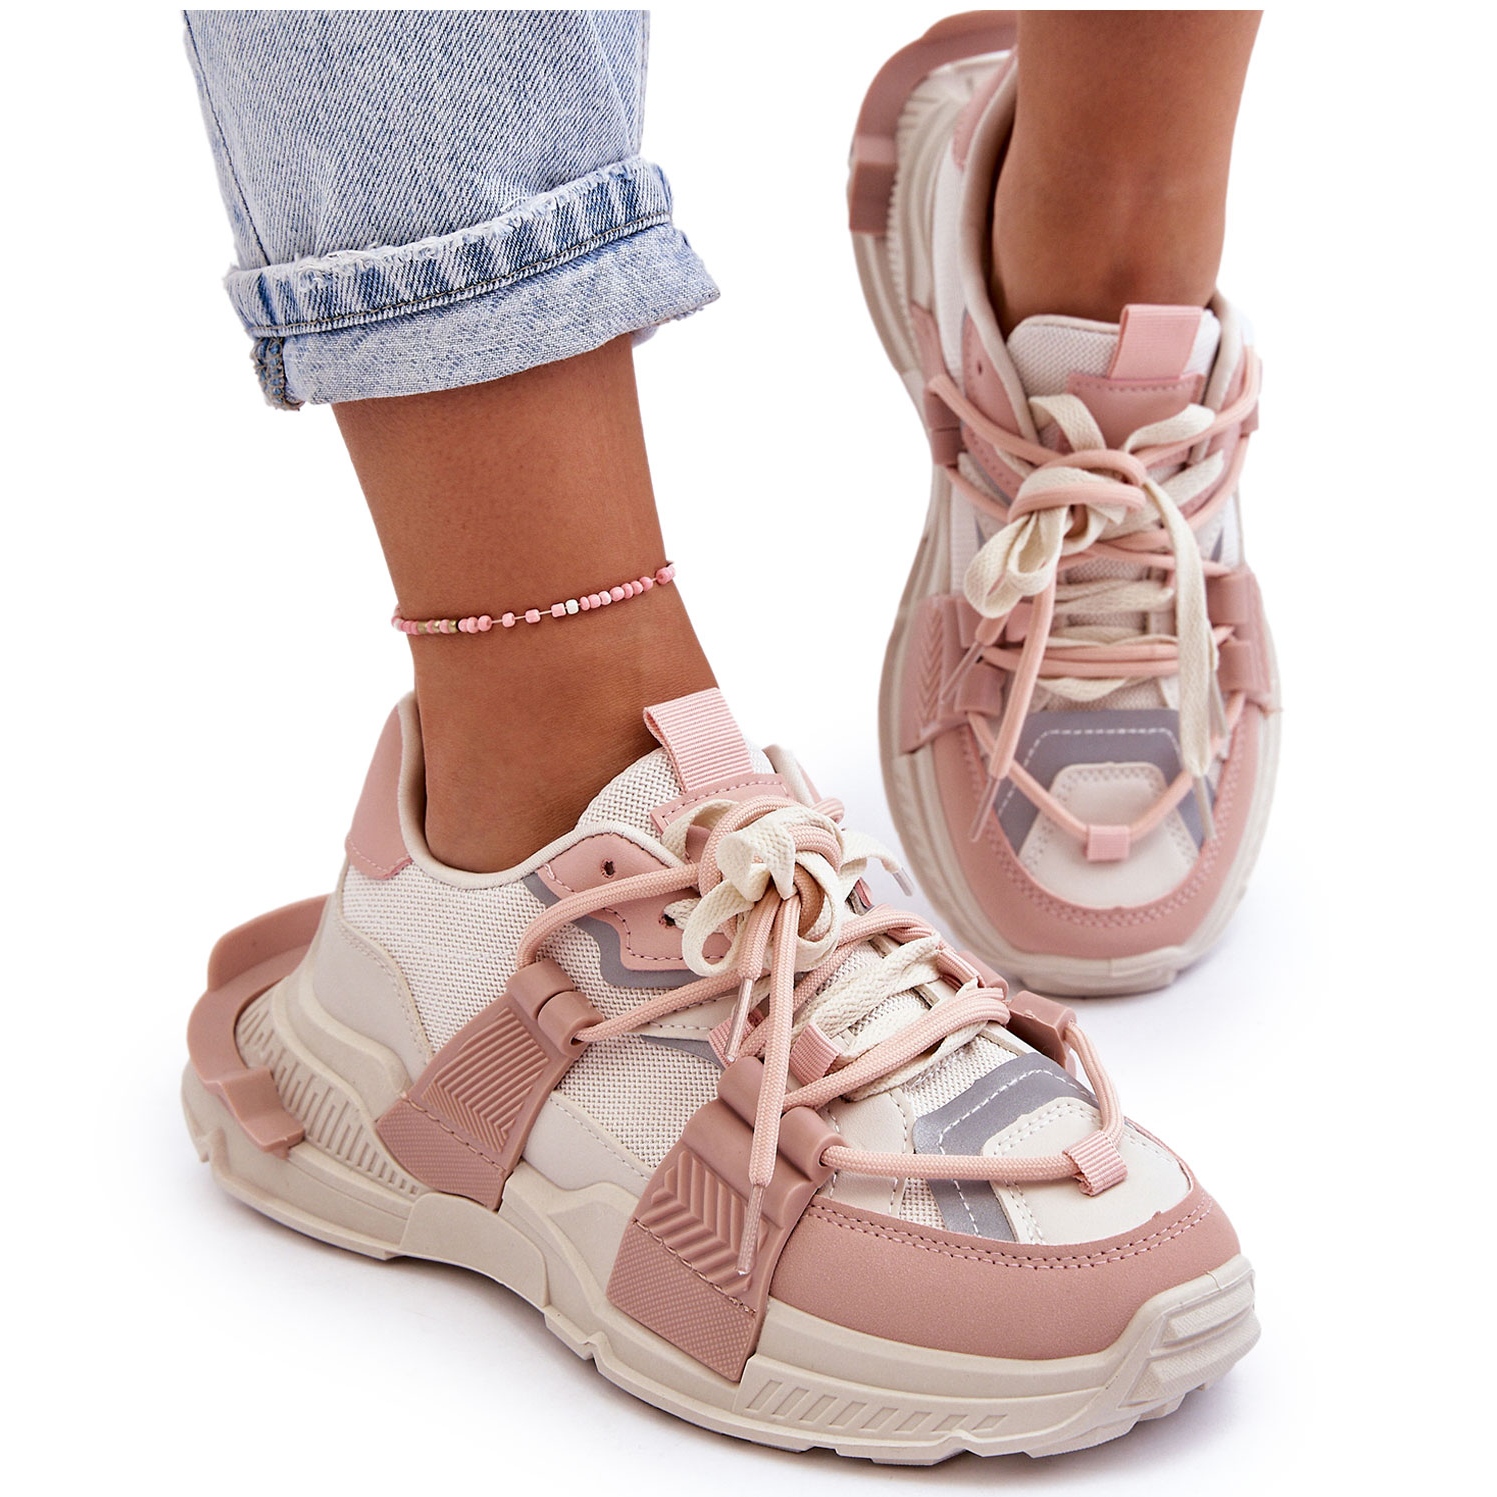 PS1 Chaussures de sport à lacets à la mode pour femmes Beige-Rose Chillout!